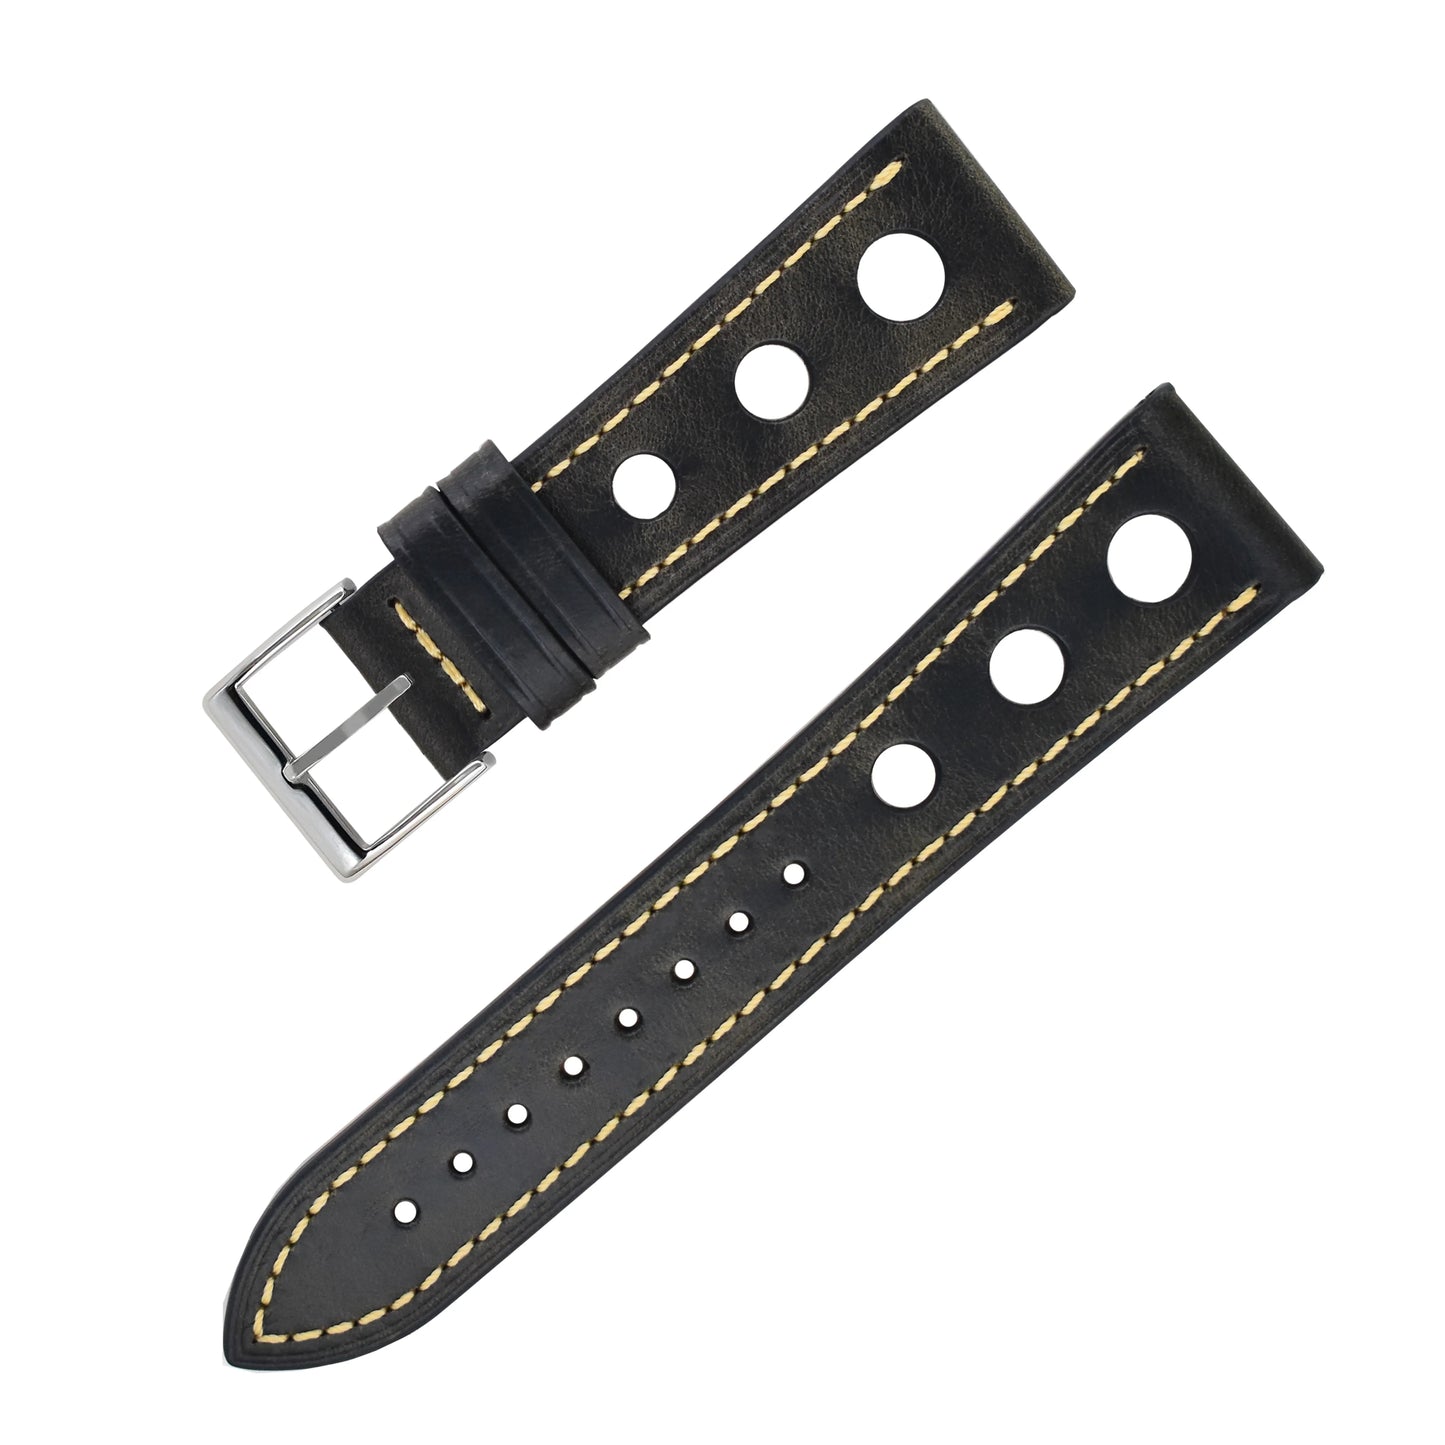 Bracelet montre cuir Racer - MONTRE A PAPY - Montre automatique seiko mod 18mmGray black